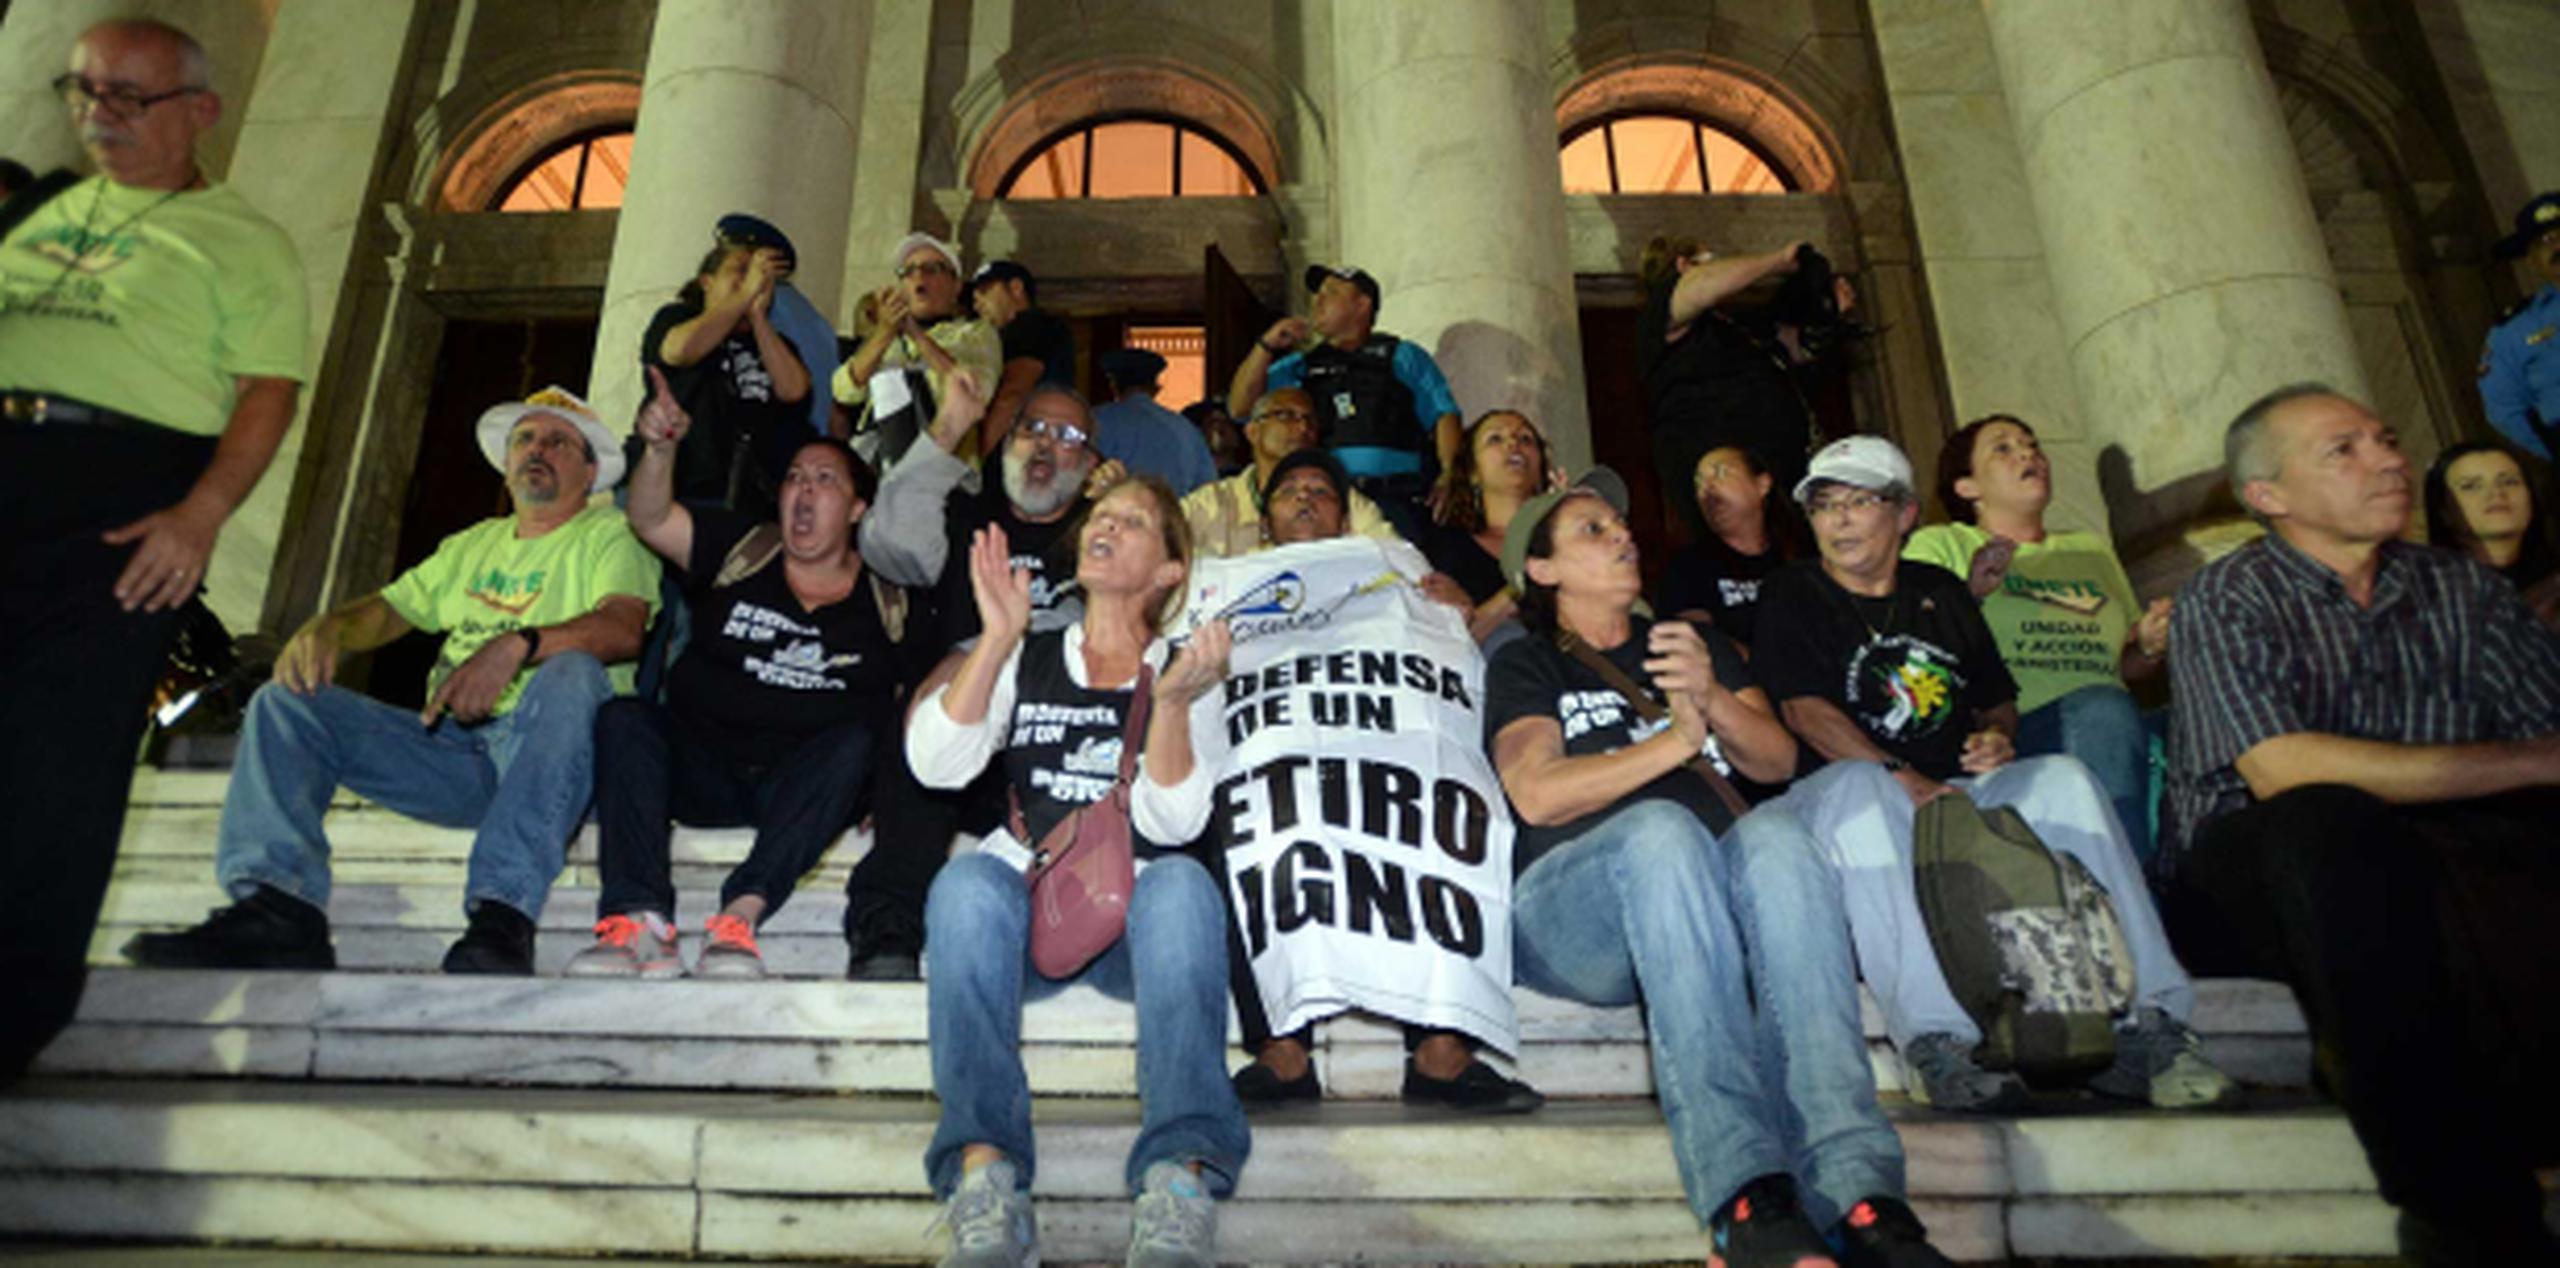 Un grupo de educadores, se sentó en las escalinatas del lado norte, solicitando la salida de las decenas de policías que se apostaron frente a la Casa de las Leyes. (andre.kang@gfrmedia.com)